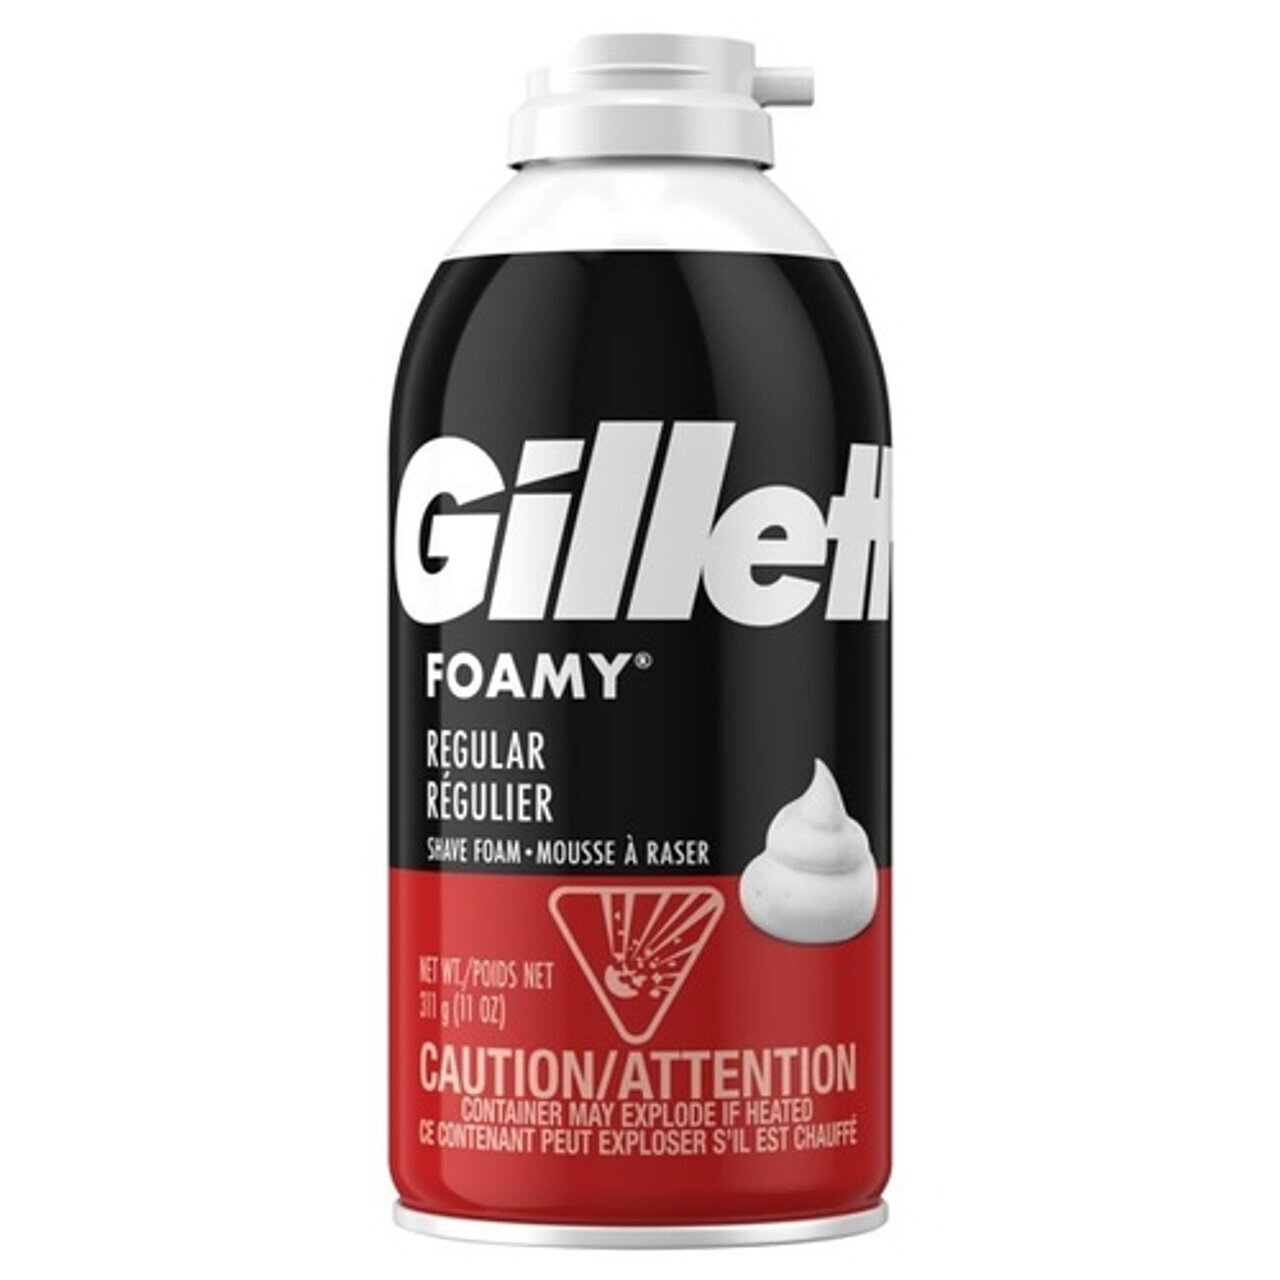 Gillette Foamy Regular Shave Foam, 311 g